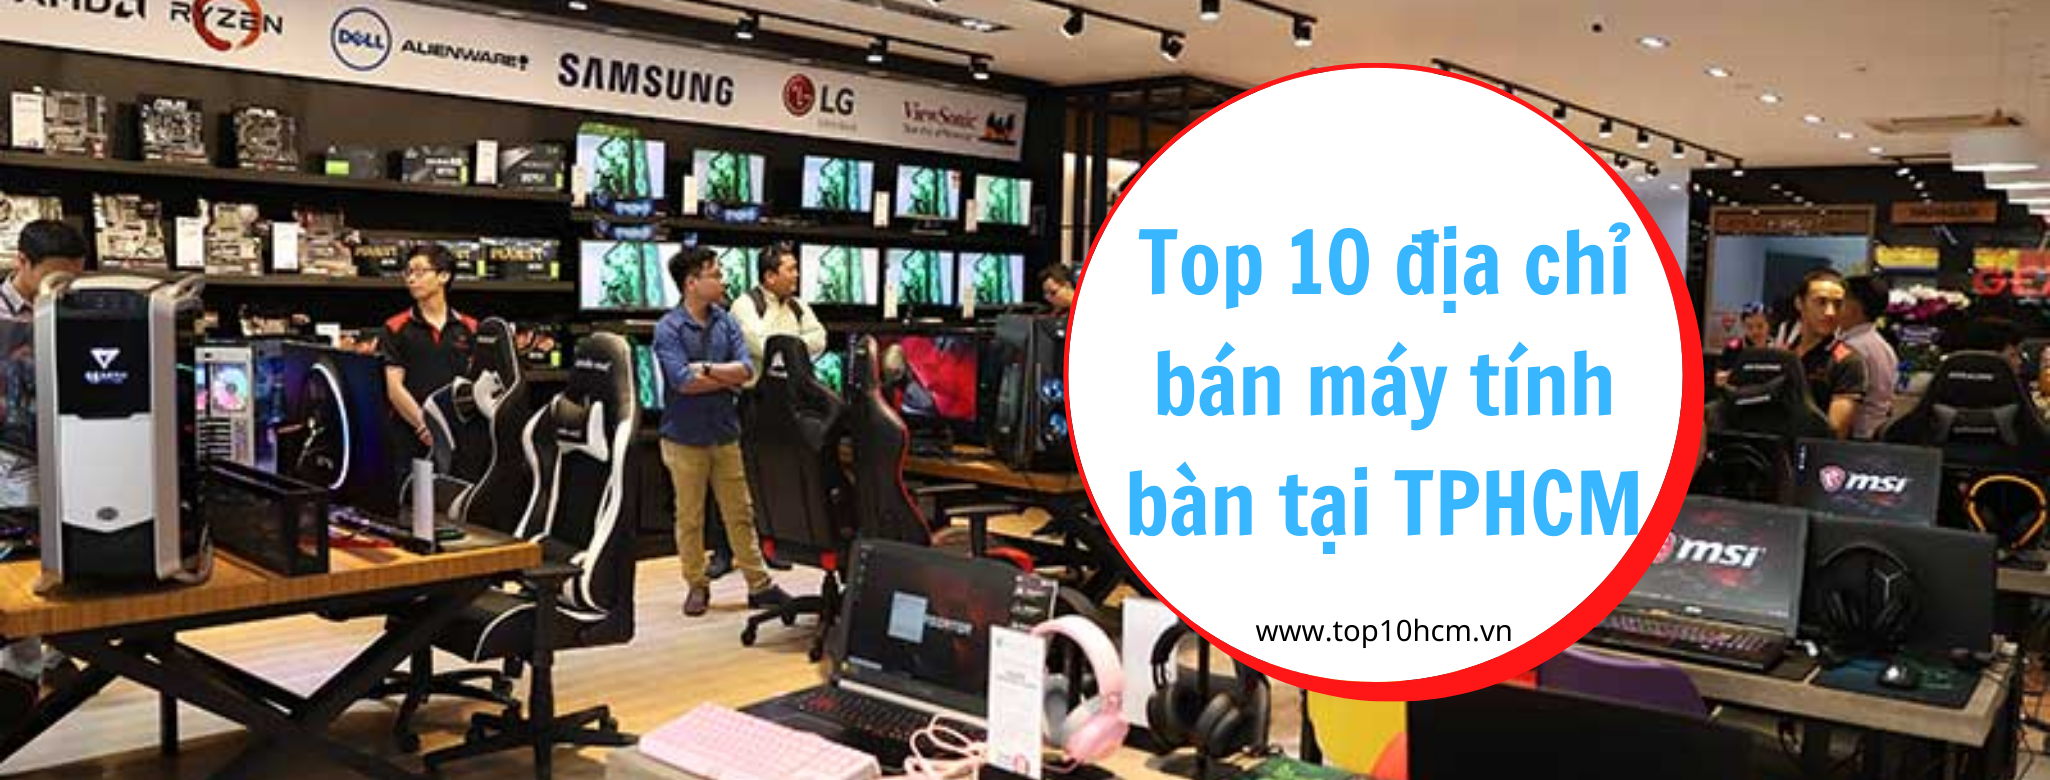 Top 10 địa chỉ bán máy tính bàn tại TPHCM - Top10hcm.vn